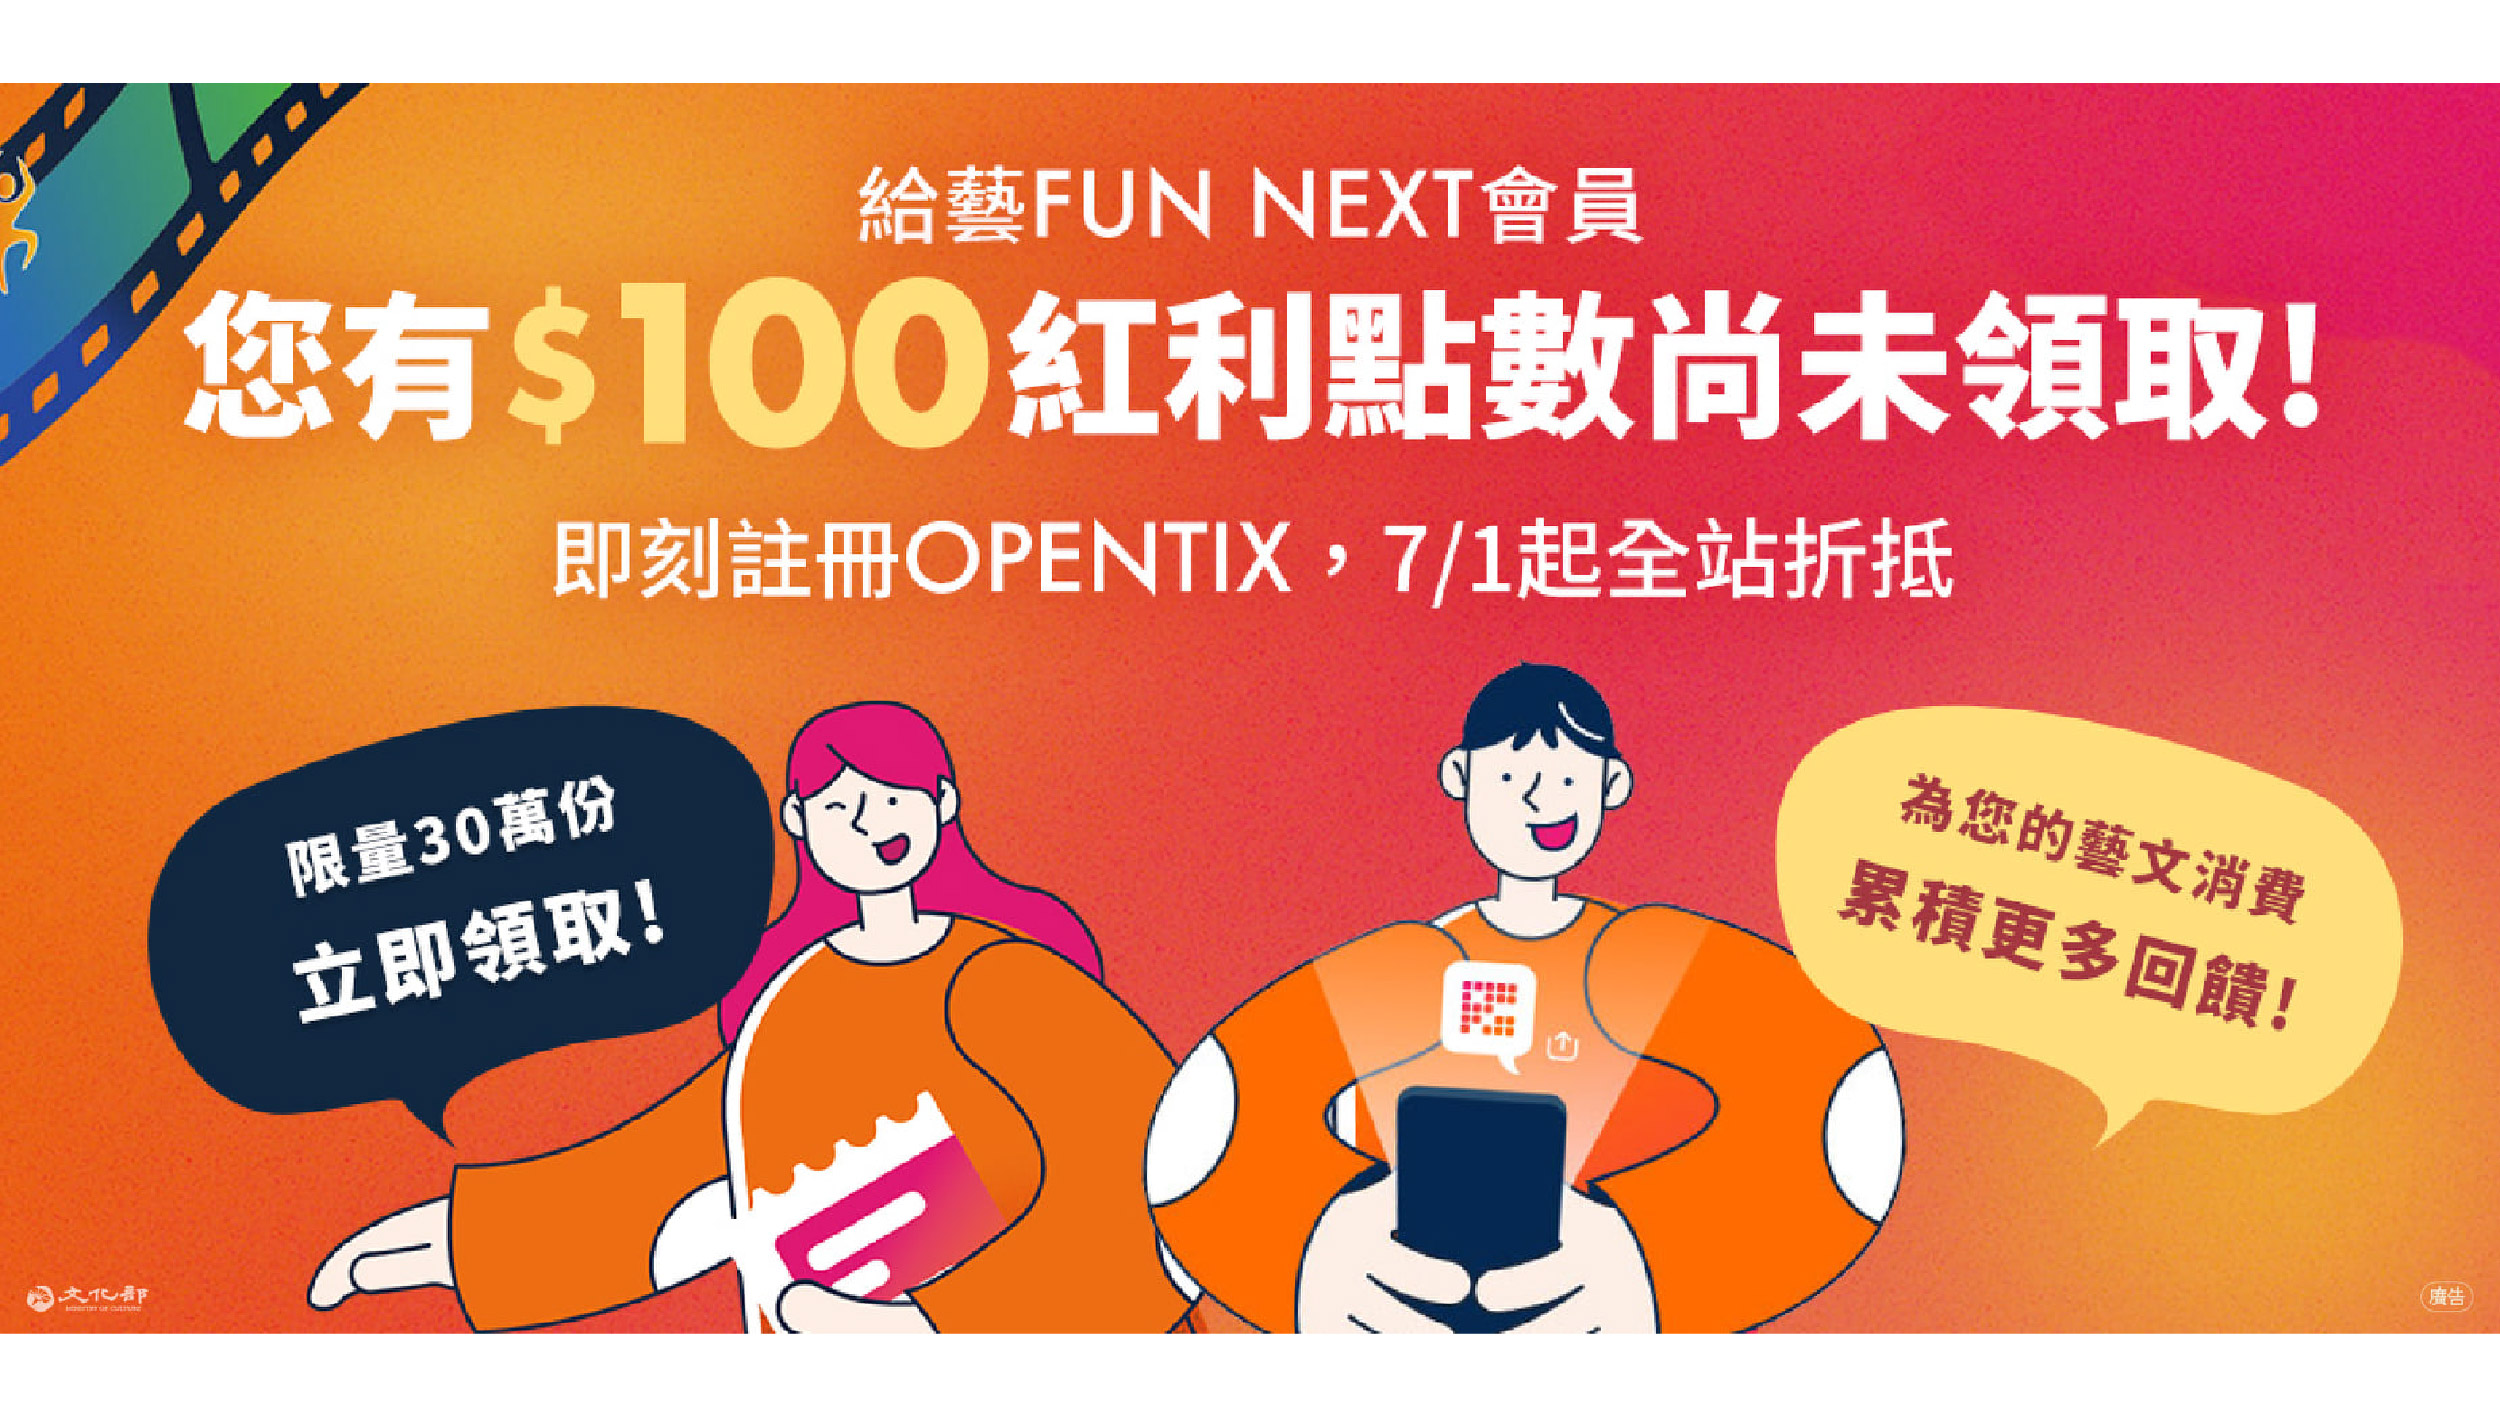 藝FUN NEXT會員加入OPENTIX贈100點紅利點數，文化部攜手企業、平臺共同合作開拓藝文消費市場！